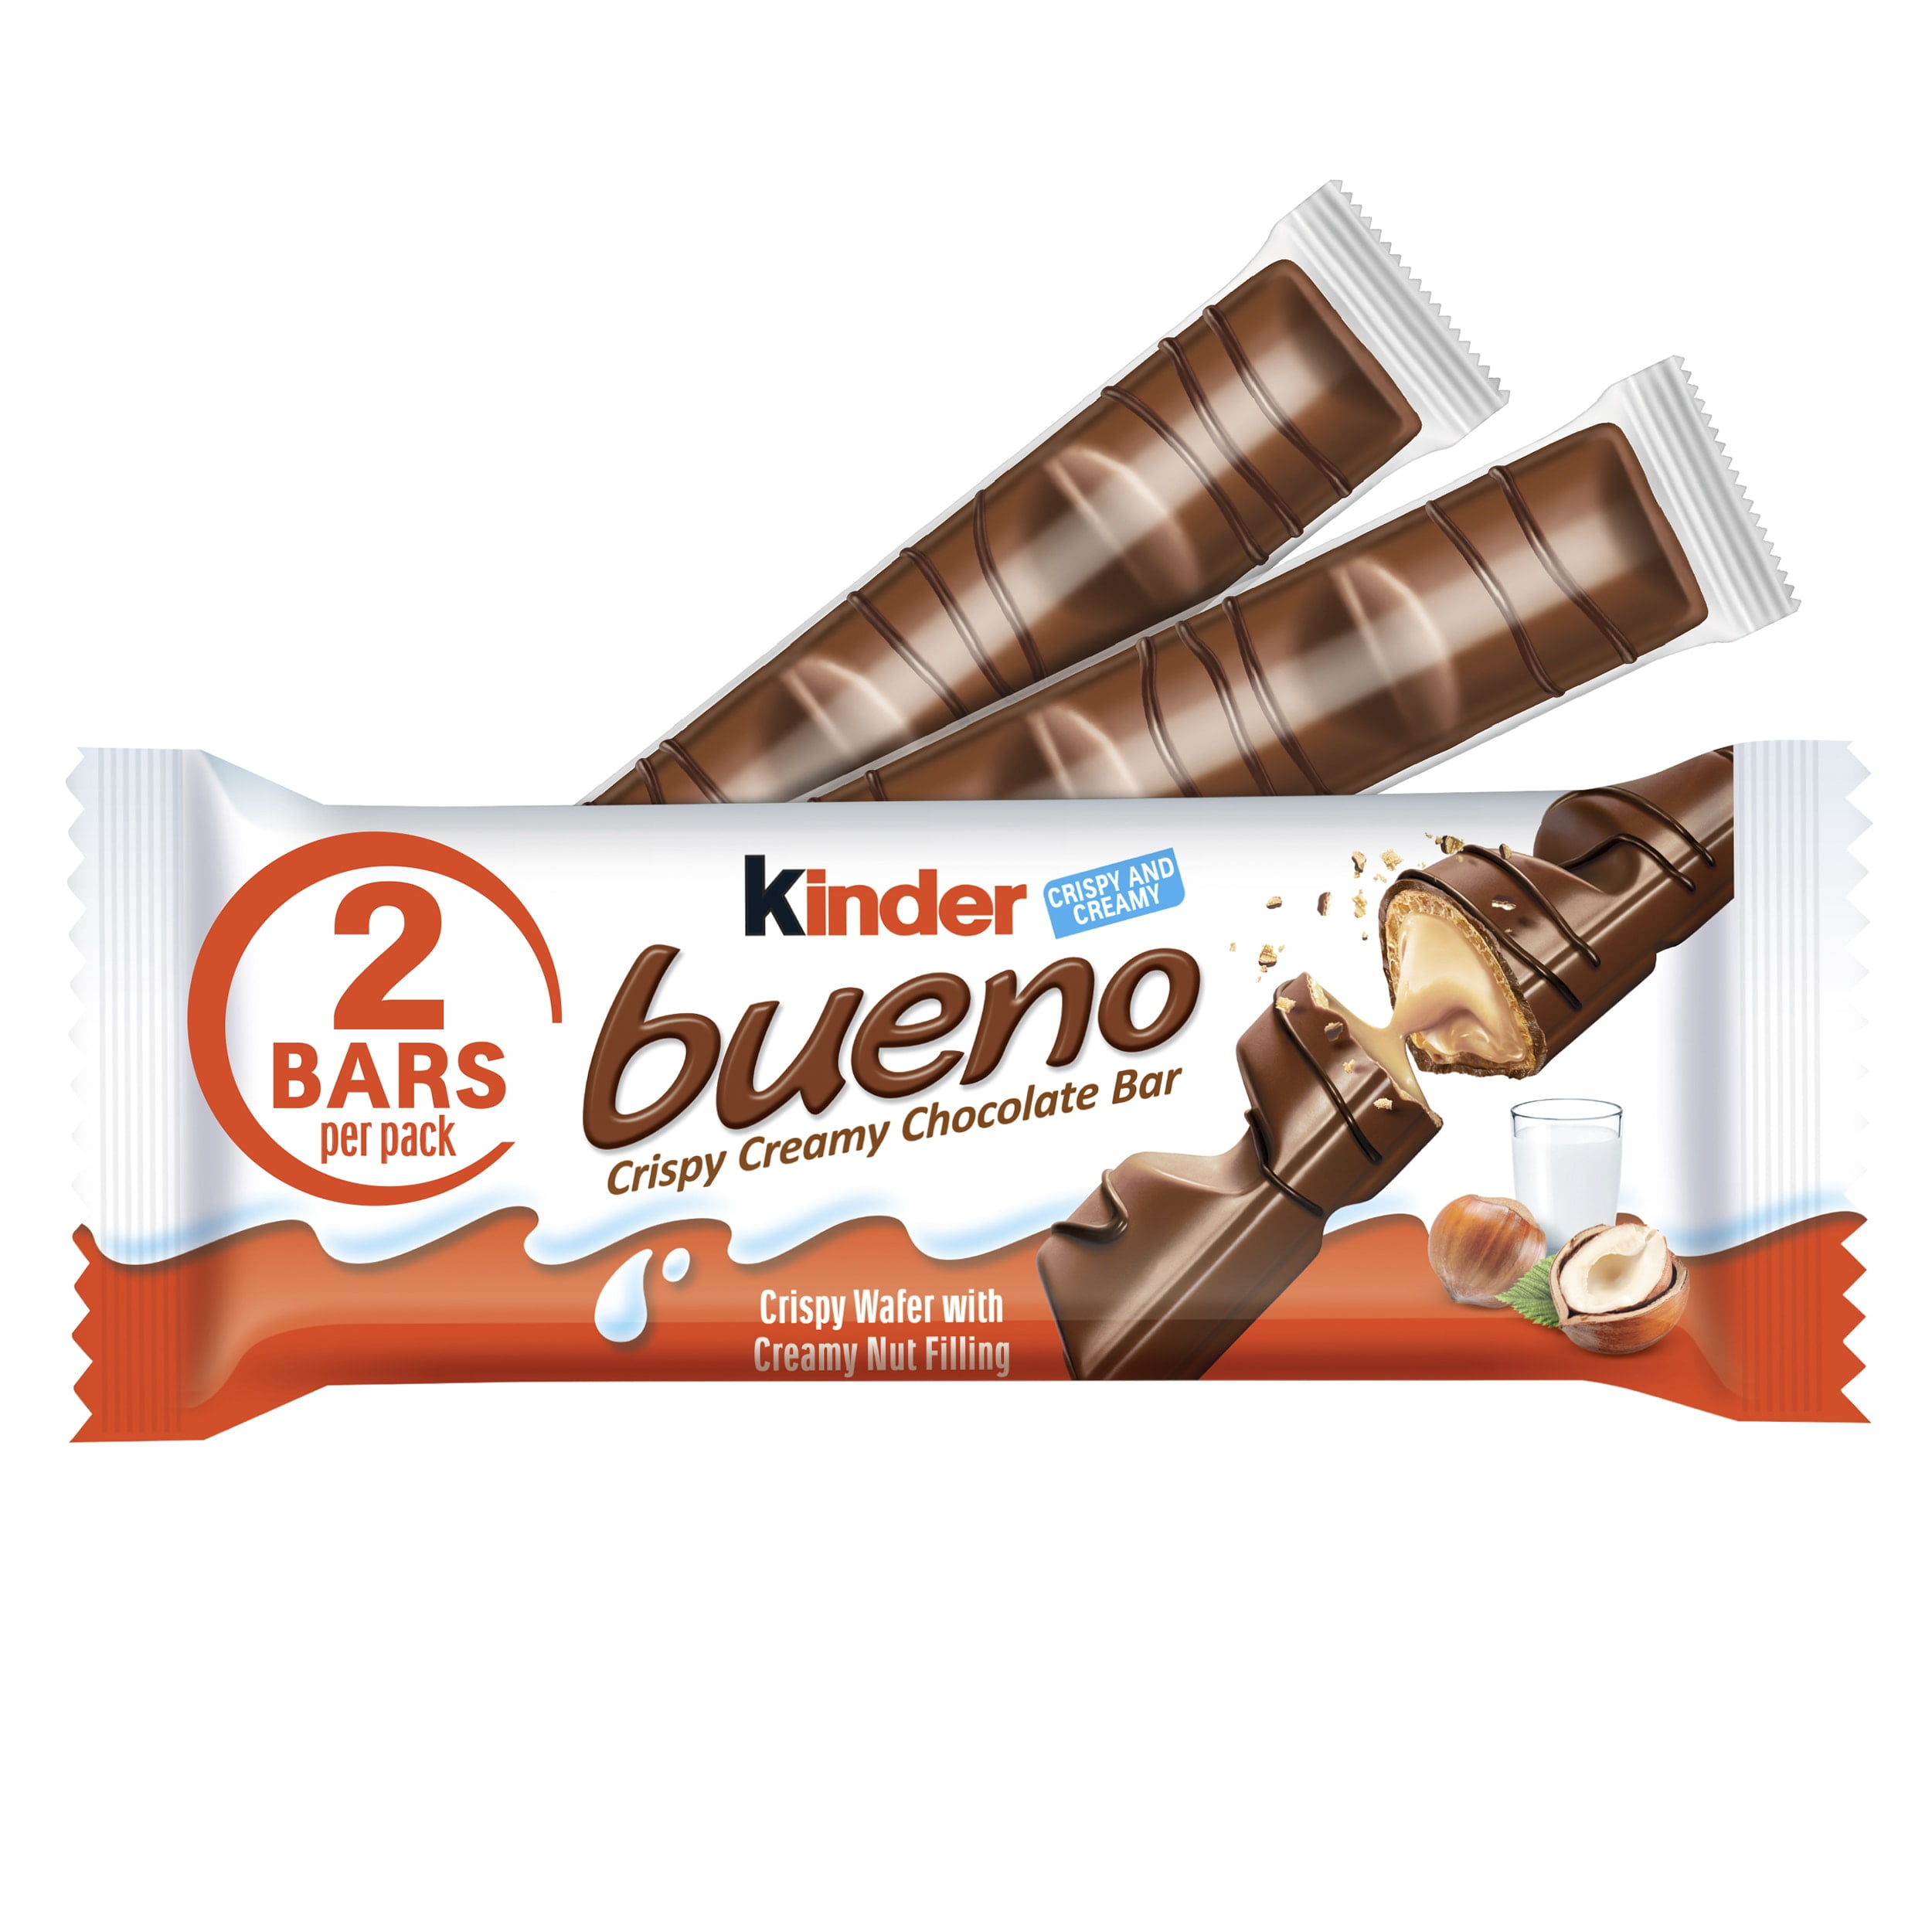 Kinder Bueno Crispy Creamy Chocolate Bars